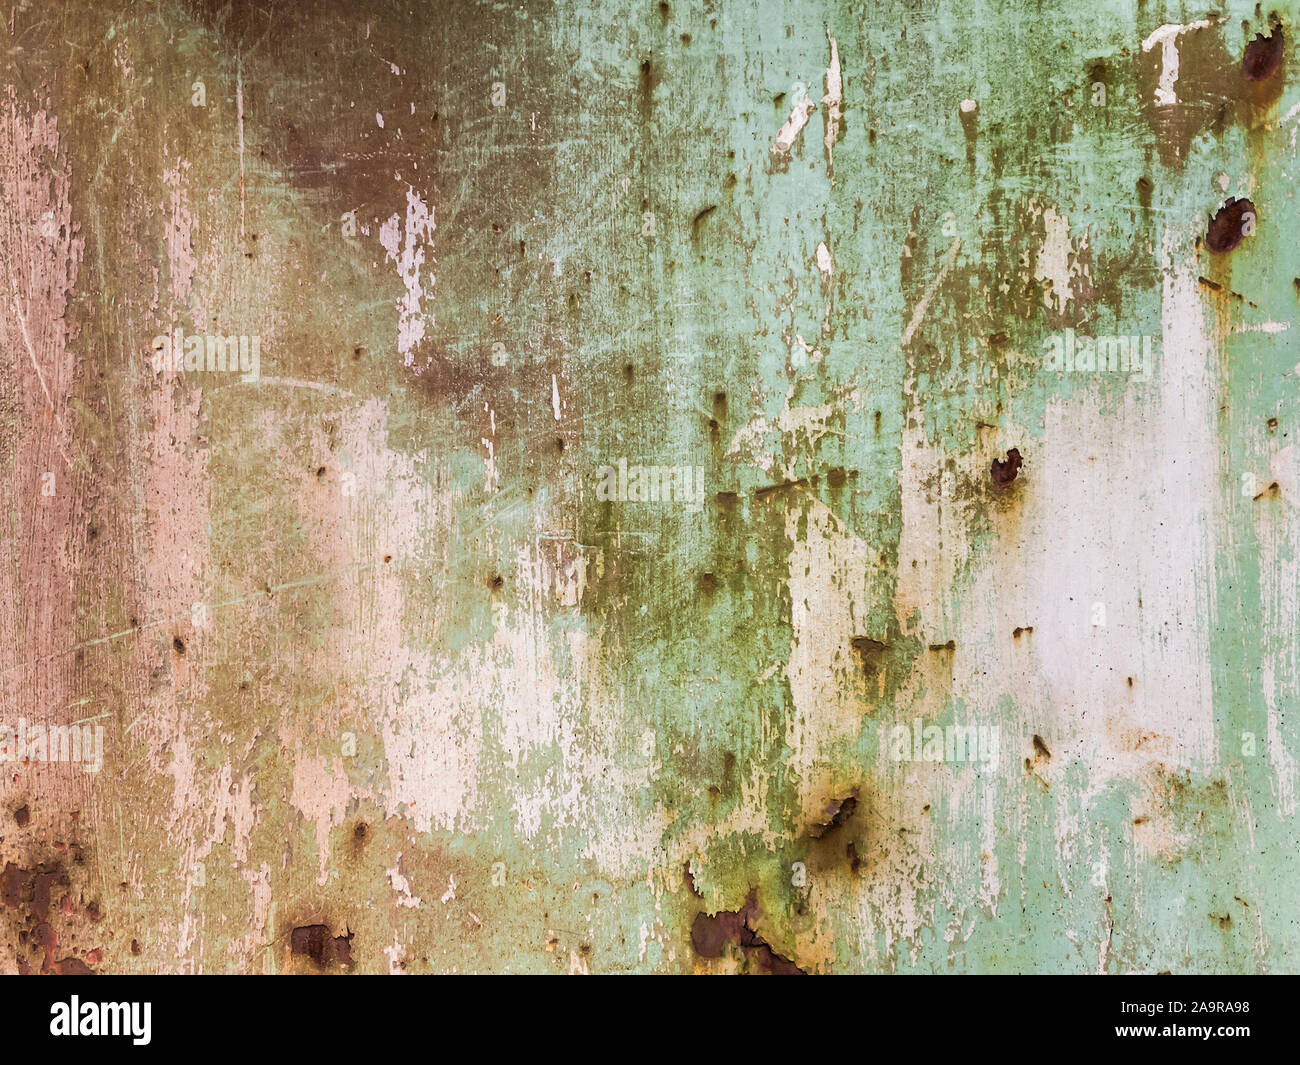 Ein Hintergrund, bestehend aus einer rostigen Stahlplatte Foto Stock